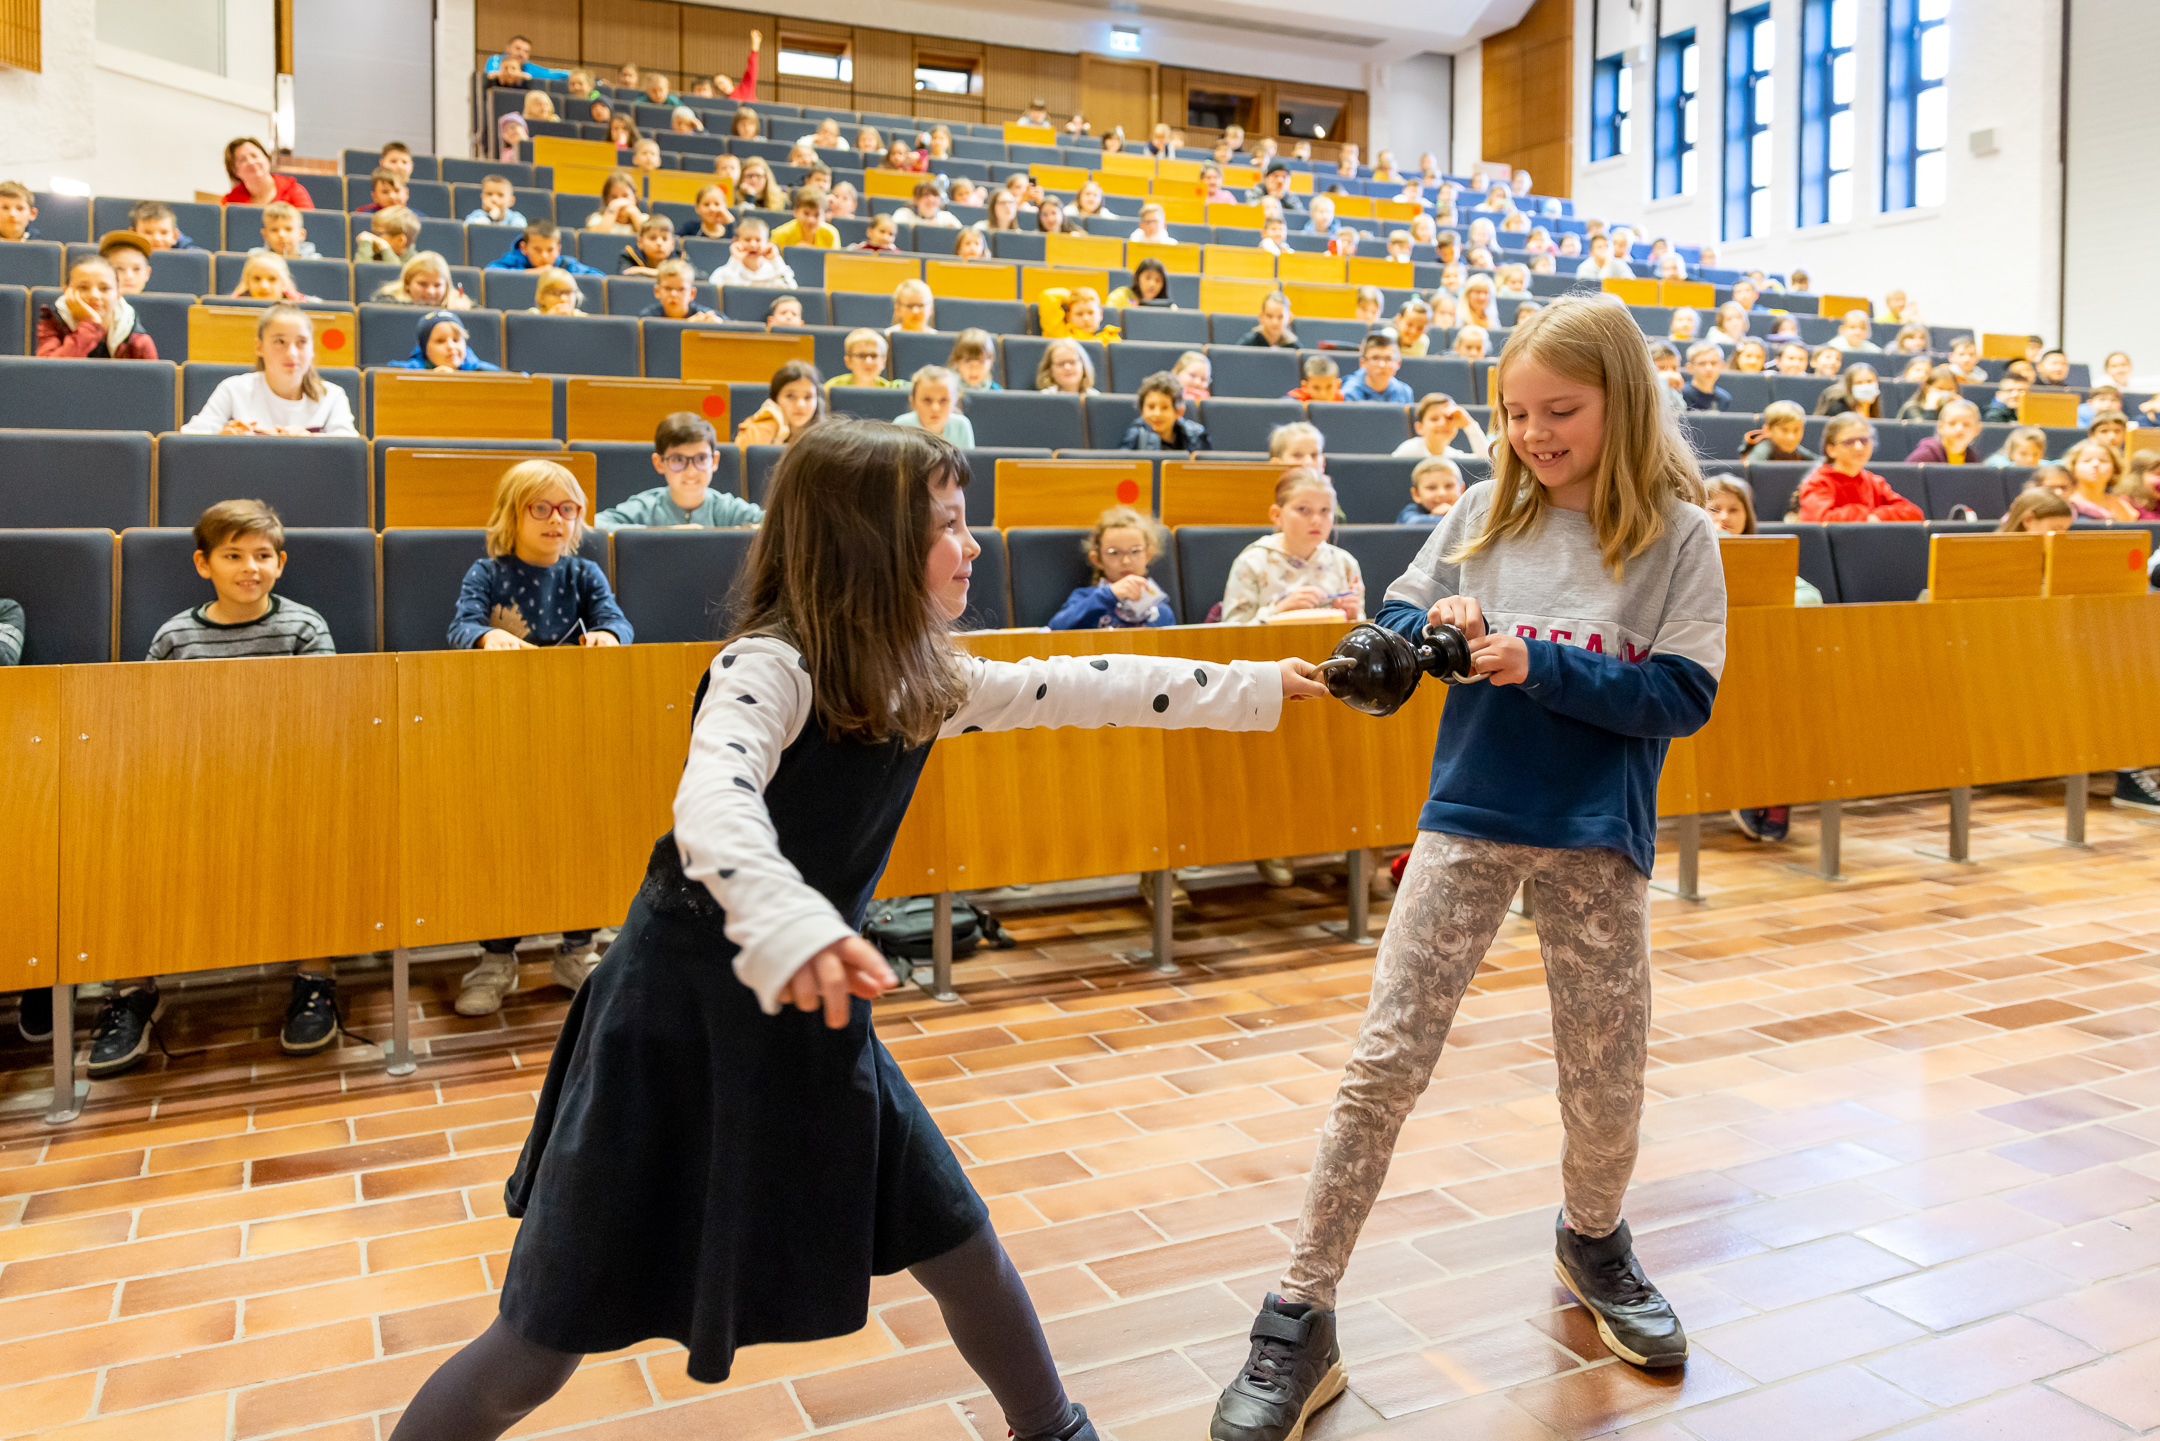 Zwei Mädchen bei dem Experiment "Magdeburger Halbkugeln" - im Hintergrund der volle Hörsaal